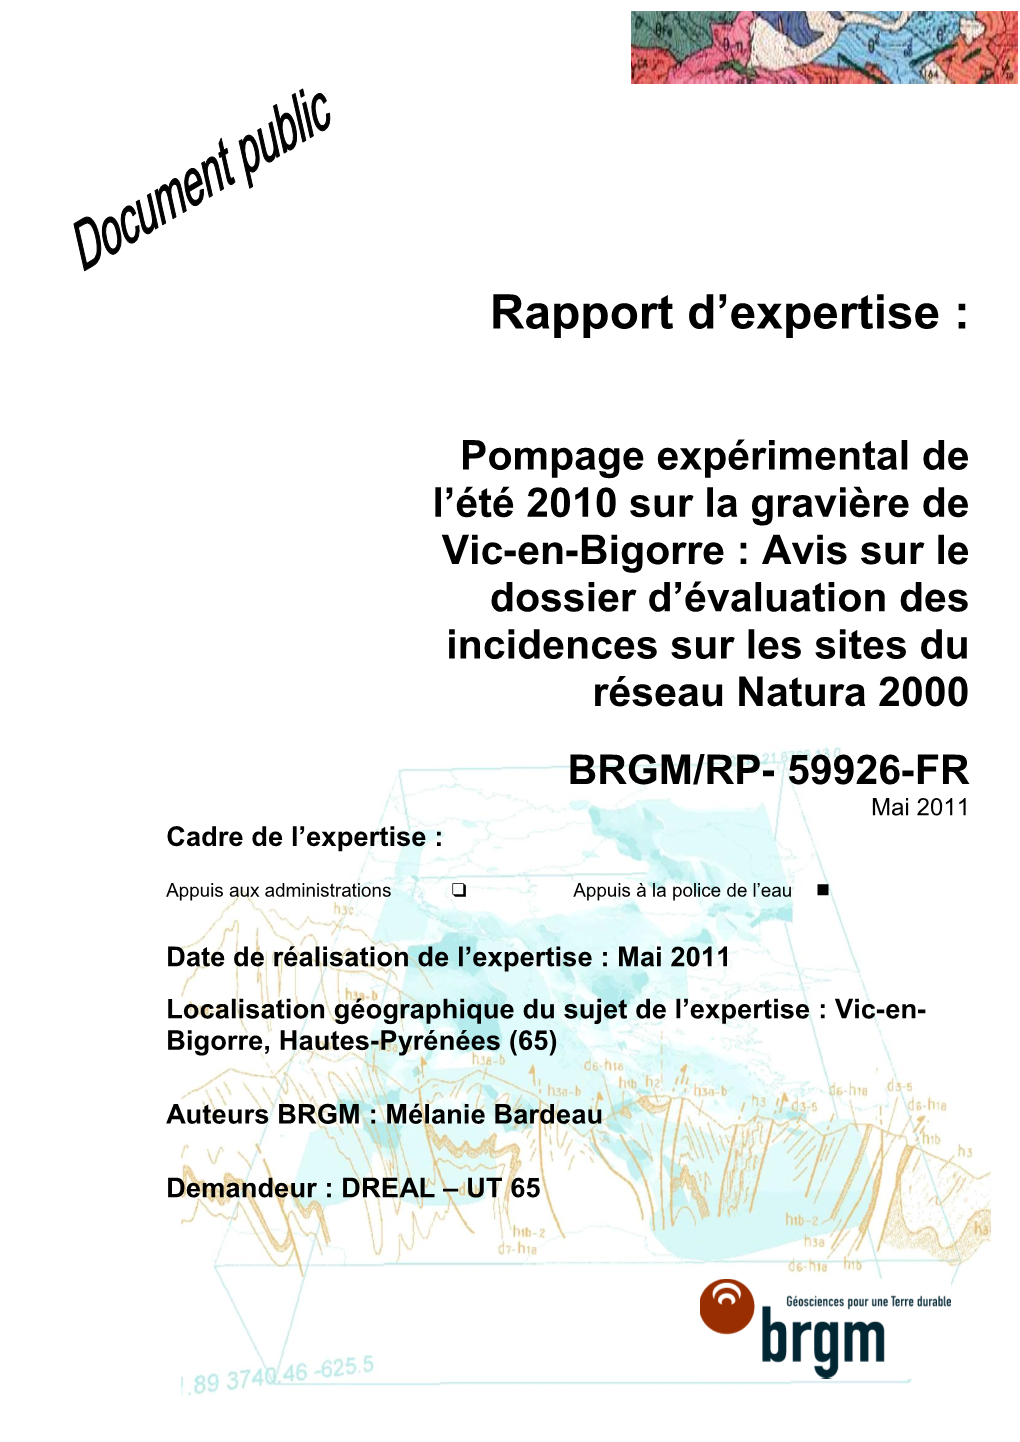 Rapport D'expertise : Pompage Expérimental De L'été 2010 Sur La Gravière De Vic-En-Bigorre